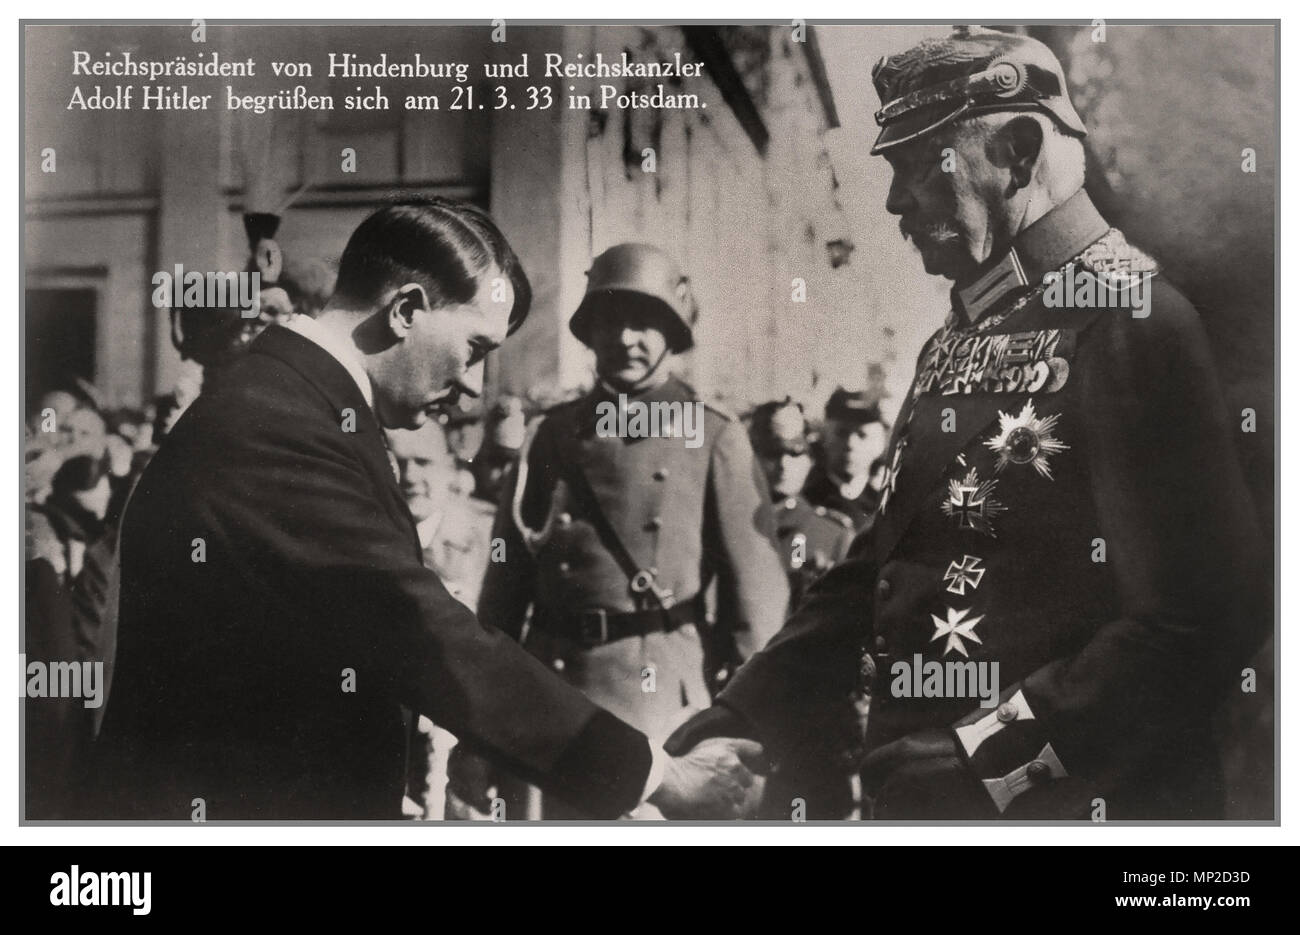 ADOLF HITLER - HINDENBURG vor Kurzem 1933 als Bundeskanzler, Adolf Hitler grüßt Präsident Paul von Hindenburg in Potsdam, Deutschland, am 21. März 1933 ernannt. Diese Pose wurde entwickelt, um ein Bild von Hitler als nicht zum Projekt - Bedrohung für die etablierte Ordnung. Dieses Bild ist aus einem weit verbreiteten beliebten Postkarte. Hitler wird in ziviler Kleidung, Verbeugung vor den stark eingerichtet von Hindenburg. Der 5. März 1933, Wahlen legitimiert und Macht zu Hitlers Führung. Stockfoto